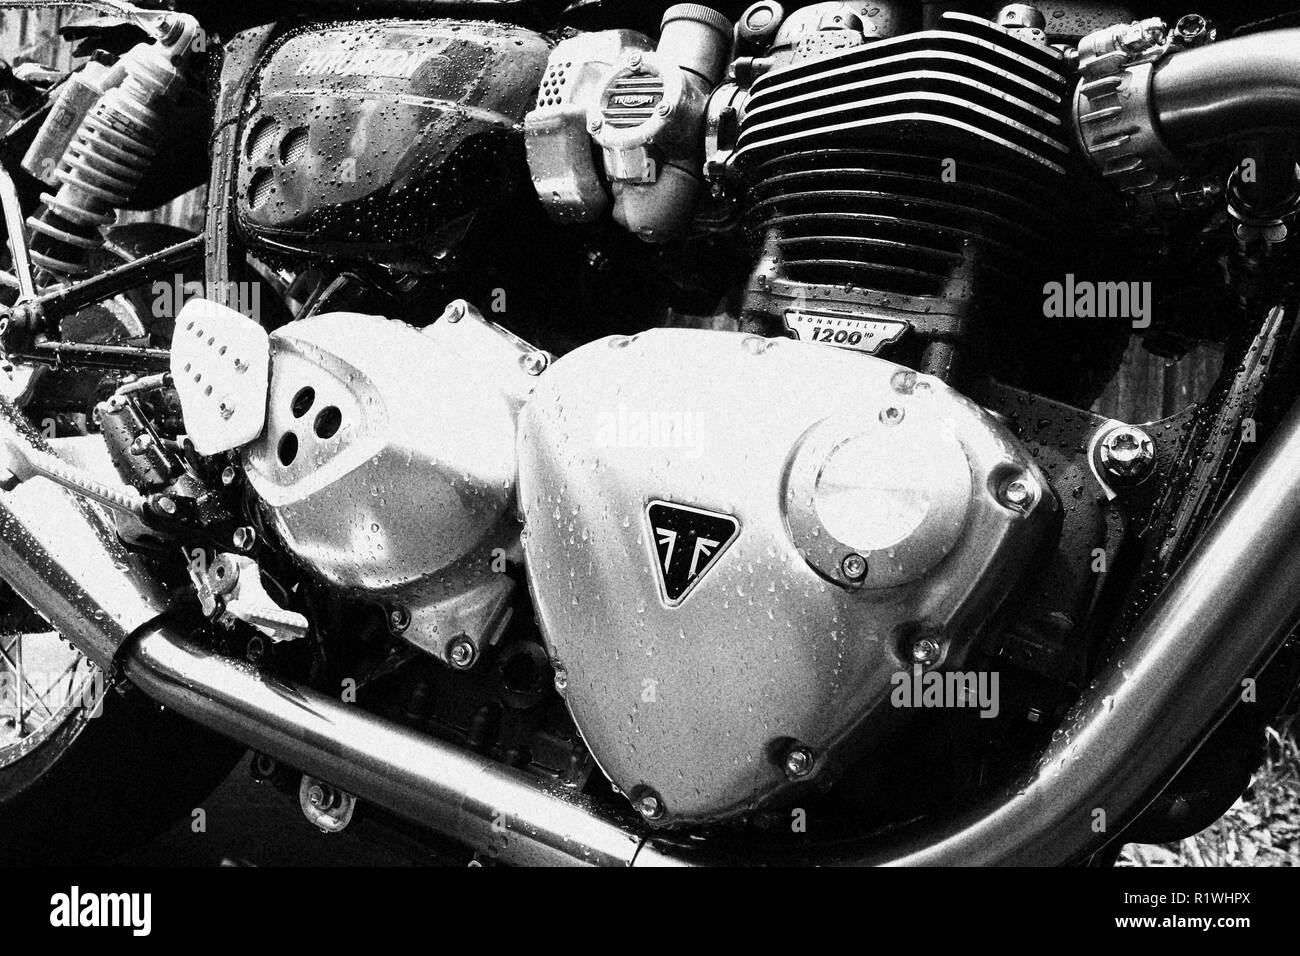 Trionfo di Thruxton motociclo Foto Stock